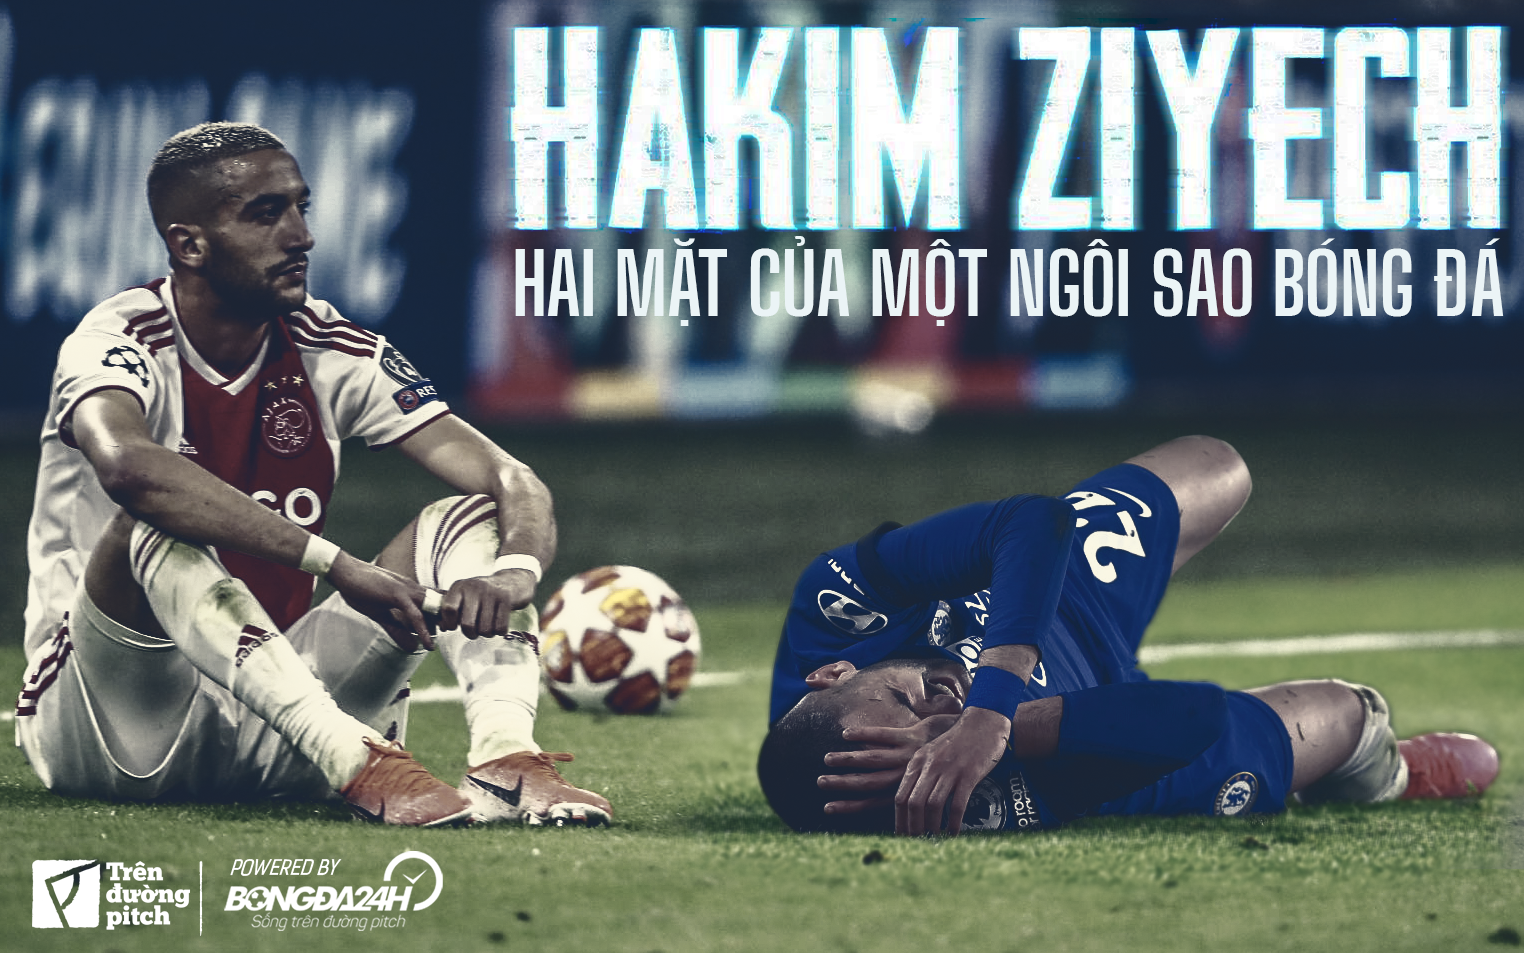 hakim ziyech faouzi ziyech-Hakim Ziyech và hai mặt của một ngôi sao bóng đá